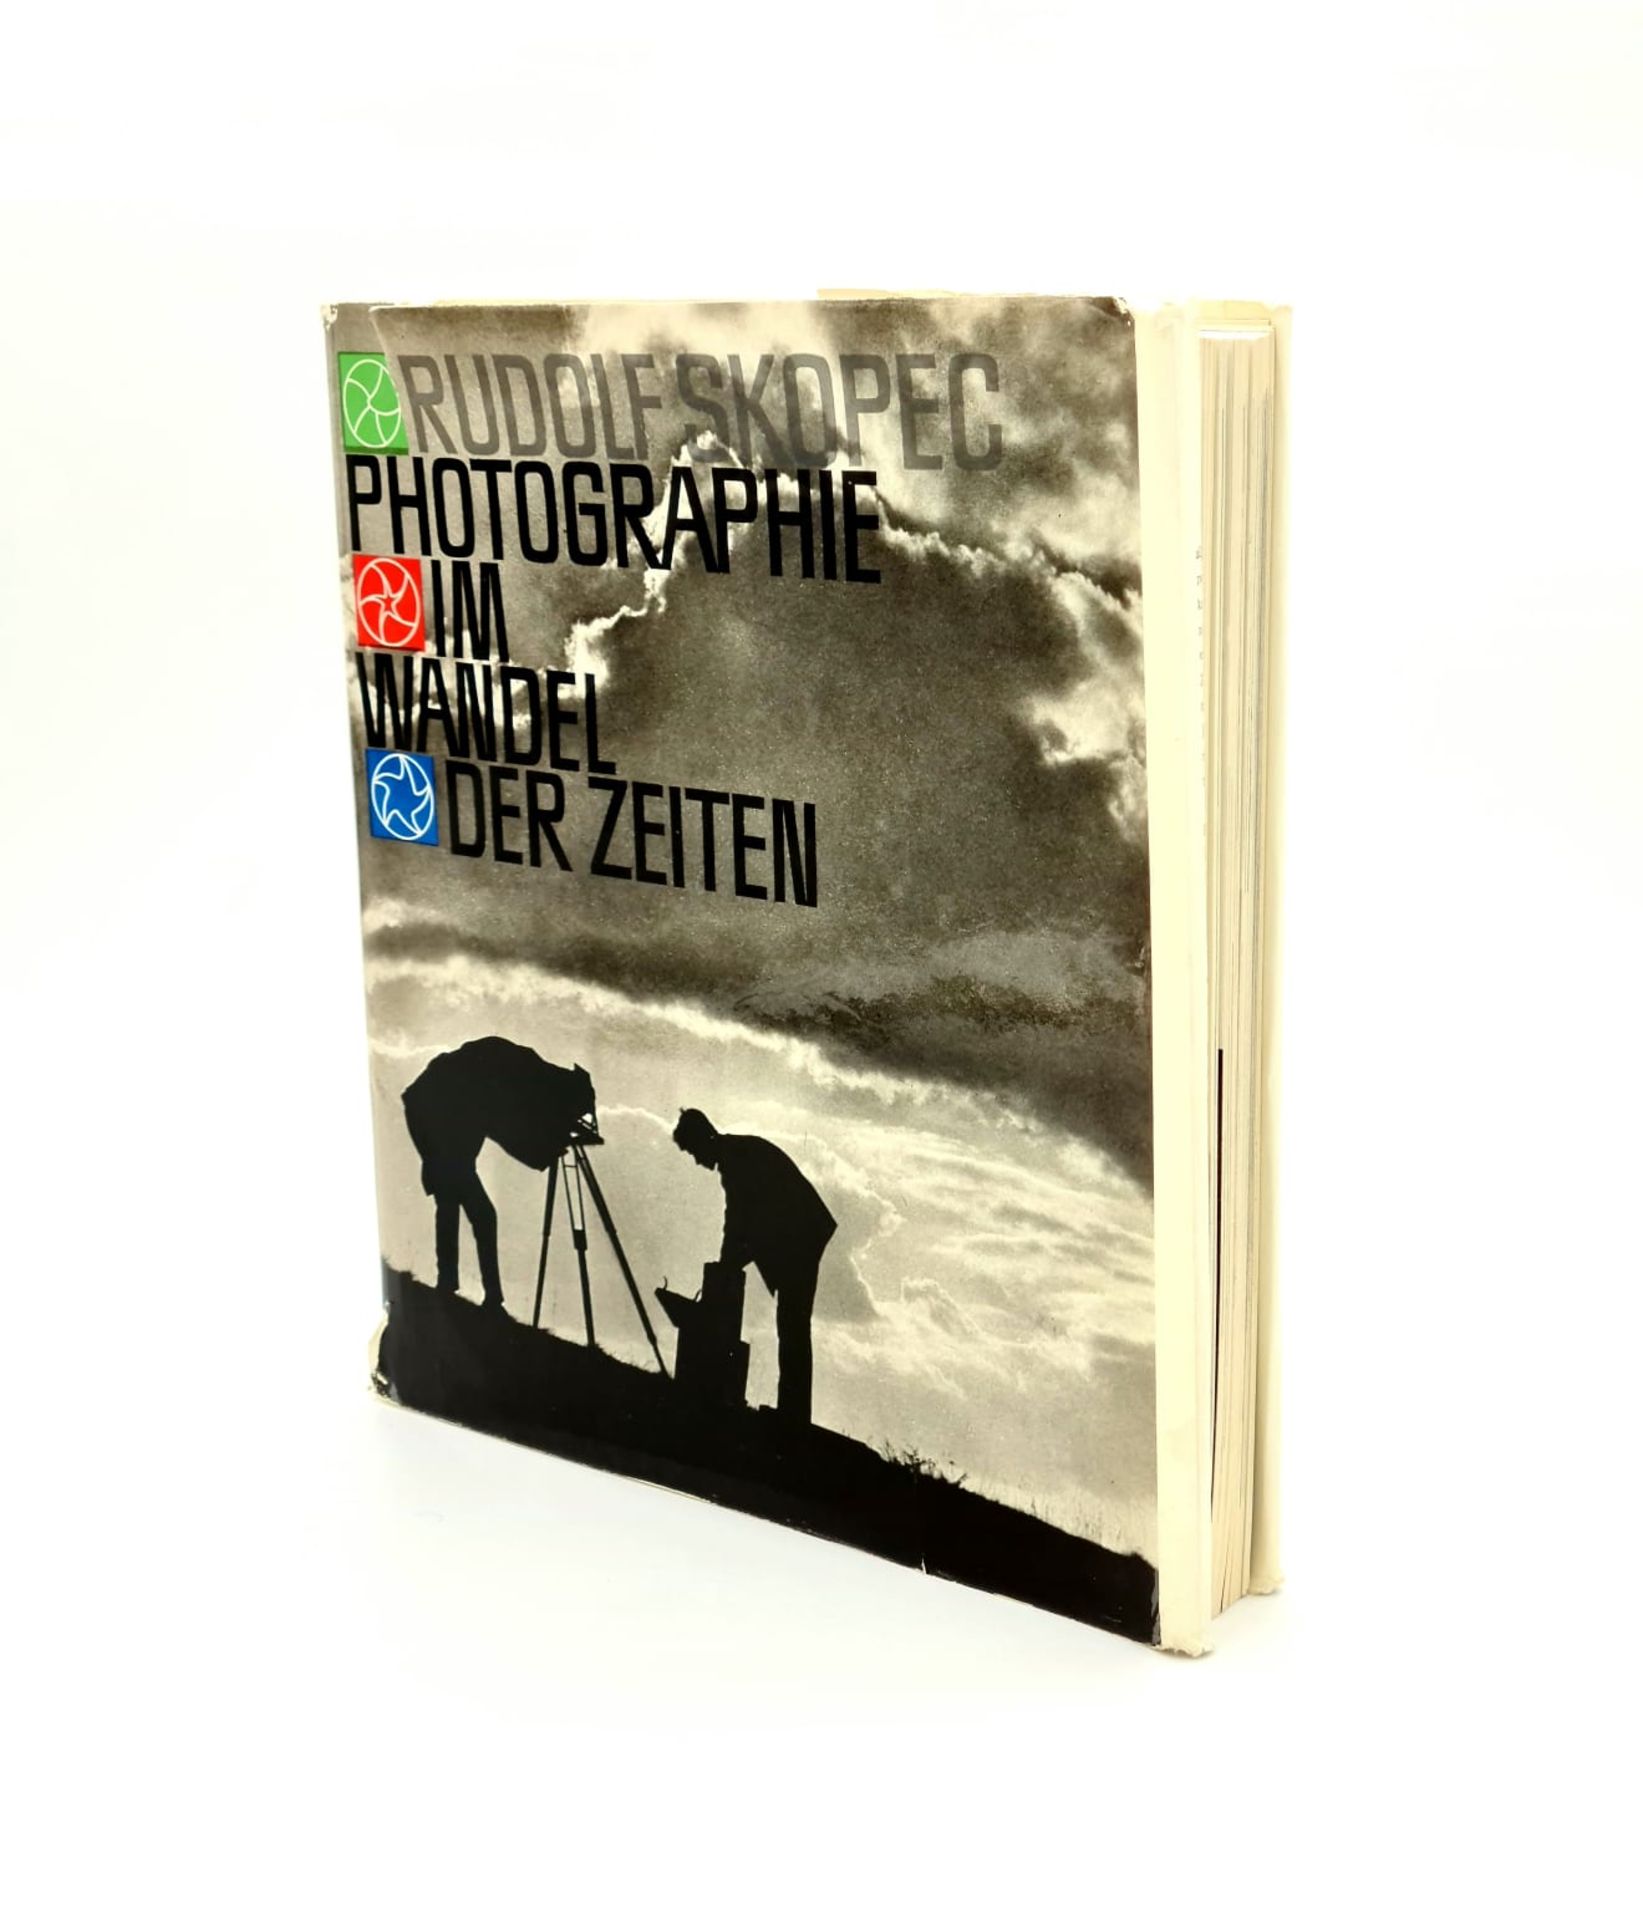 Rudolf Skopec, Photographie im Wandel der Zeit, Handsigniert, 1964 Artia Praha Verlag,